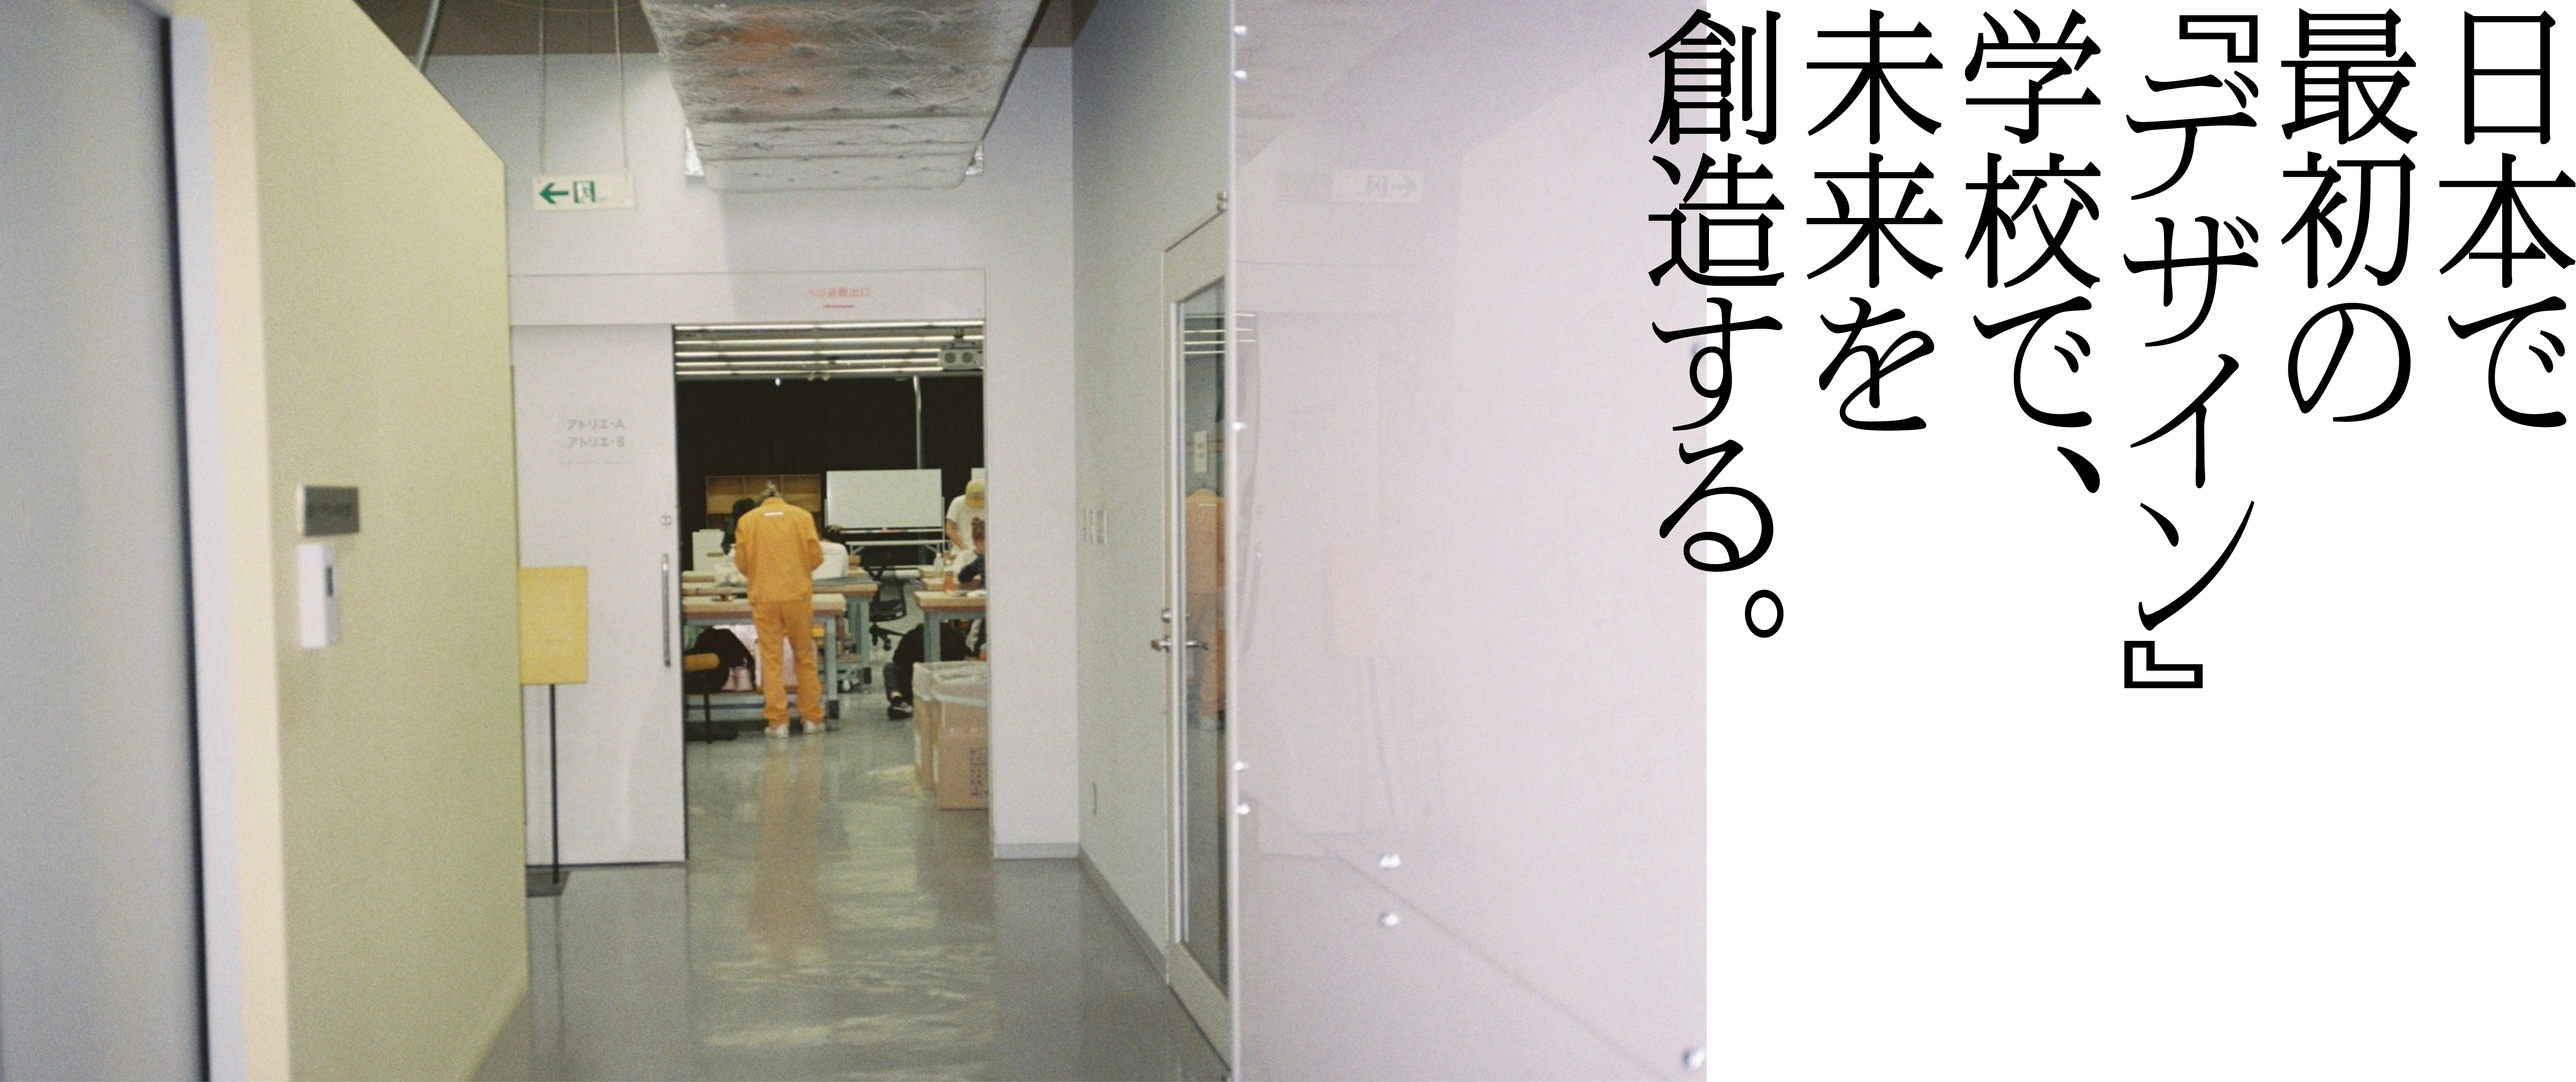 日本で最初の『デザイン』学校で、未来を創造する。